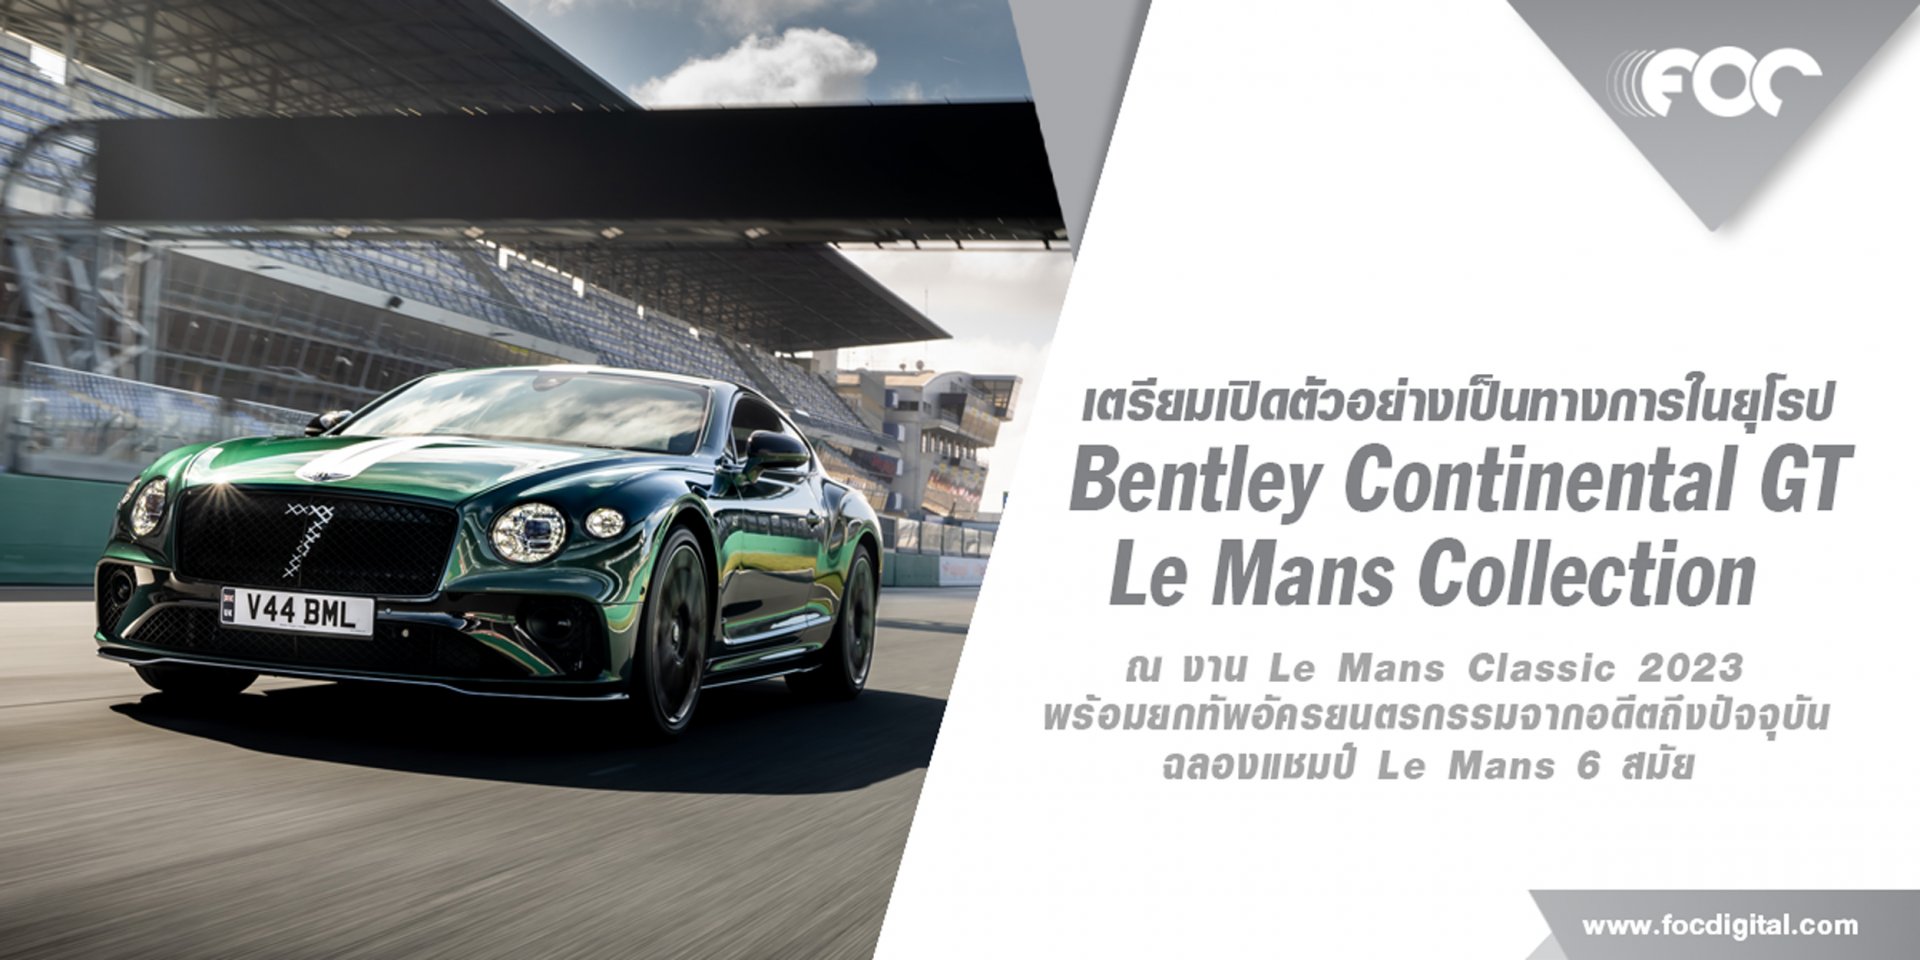 เบนท์ลีย์ มอเตอร์ส เผยโฉม Continental GT Le Mans Collection พร้อมยกทัพอัครยนตรกรรมจากอดีตถึงปัจจุบัน ฉลองแชมป์ Le Mans 6 สมัย